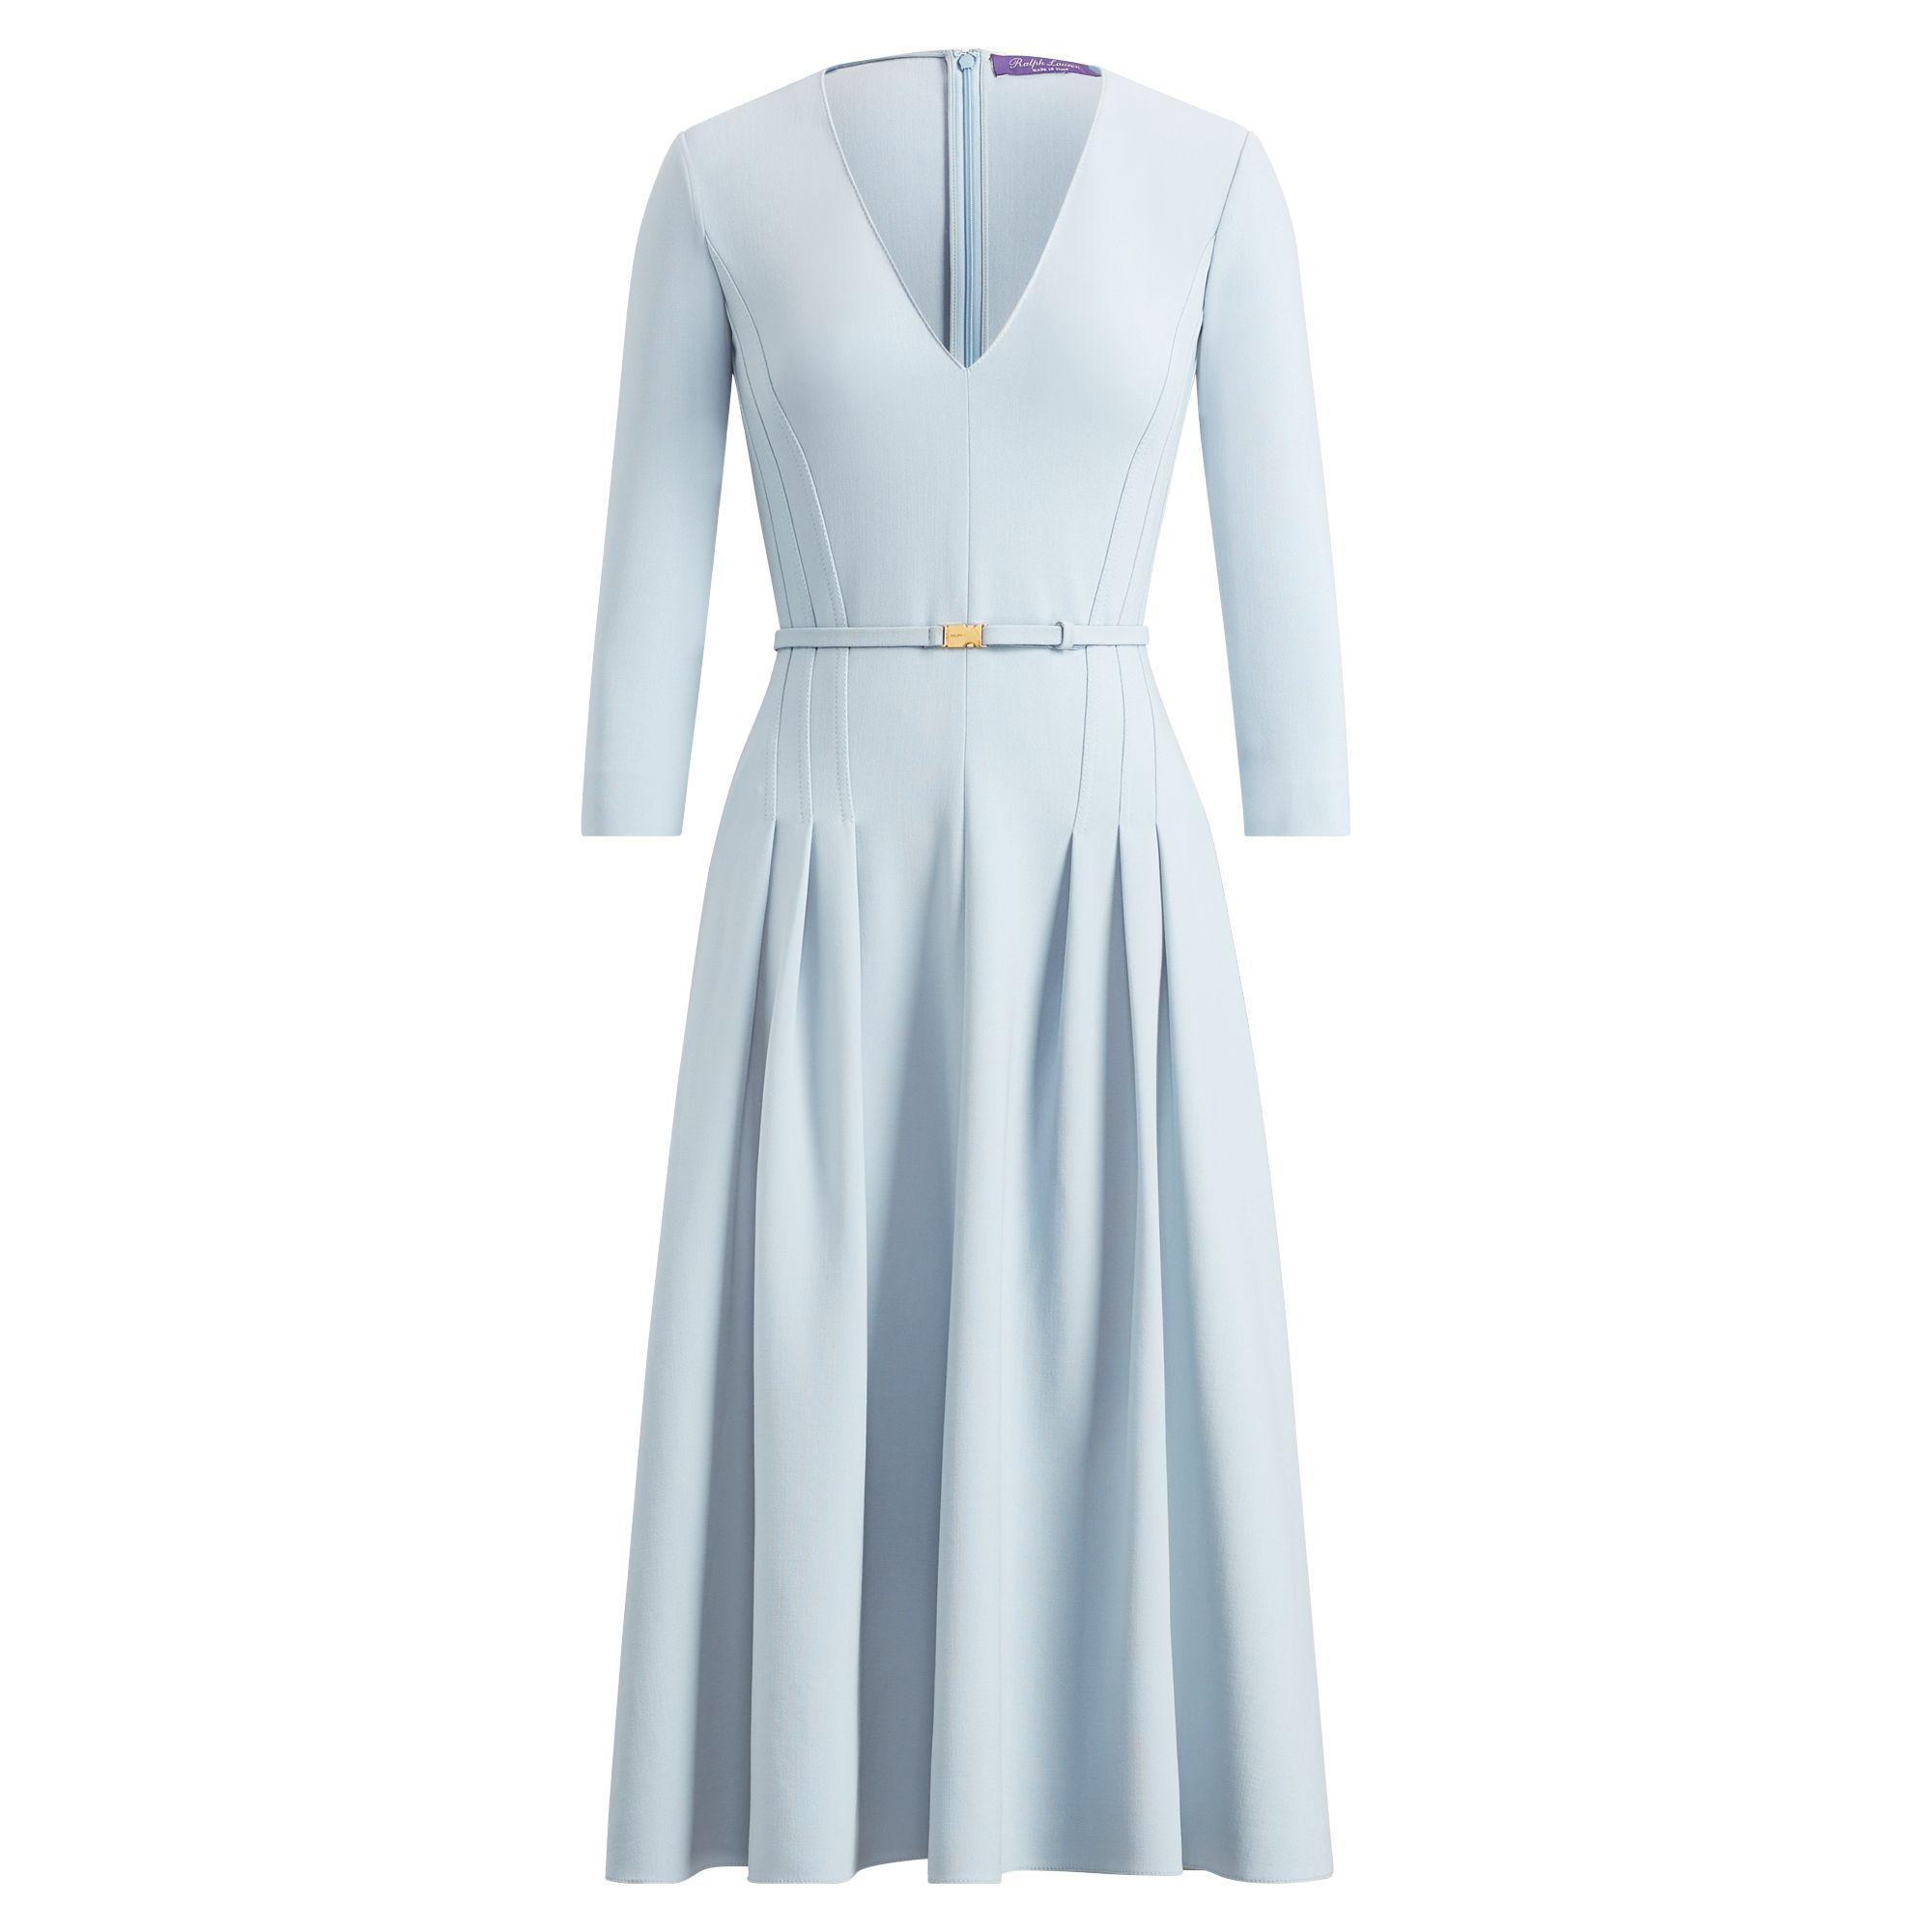 Ralph Lauren Raeana Wool-blend Dress in Powder Blue (Blue) - Lyst